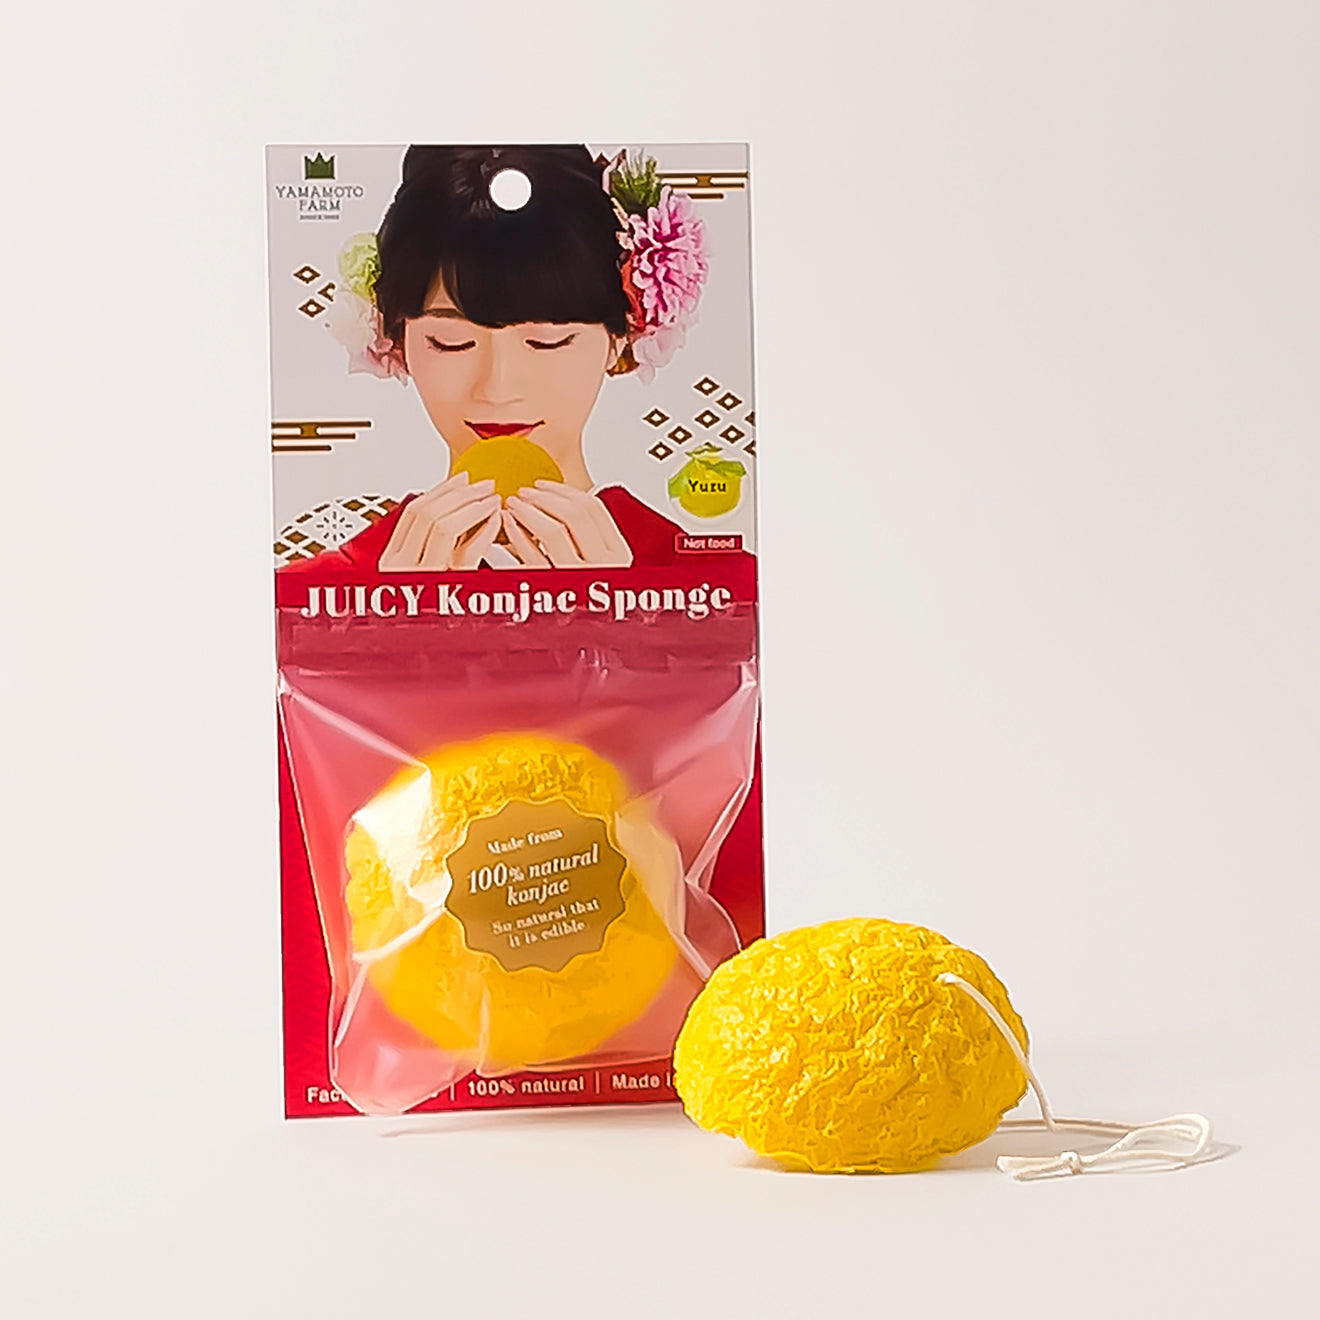 JUICY Konjac Sponge (Yuzu)